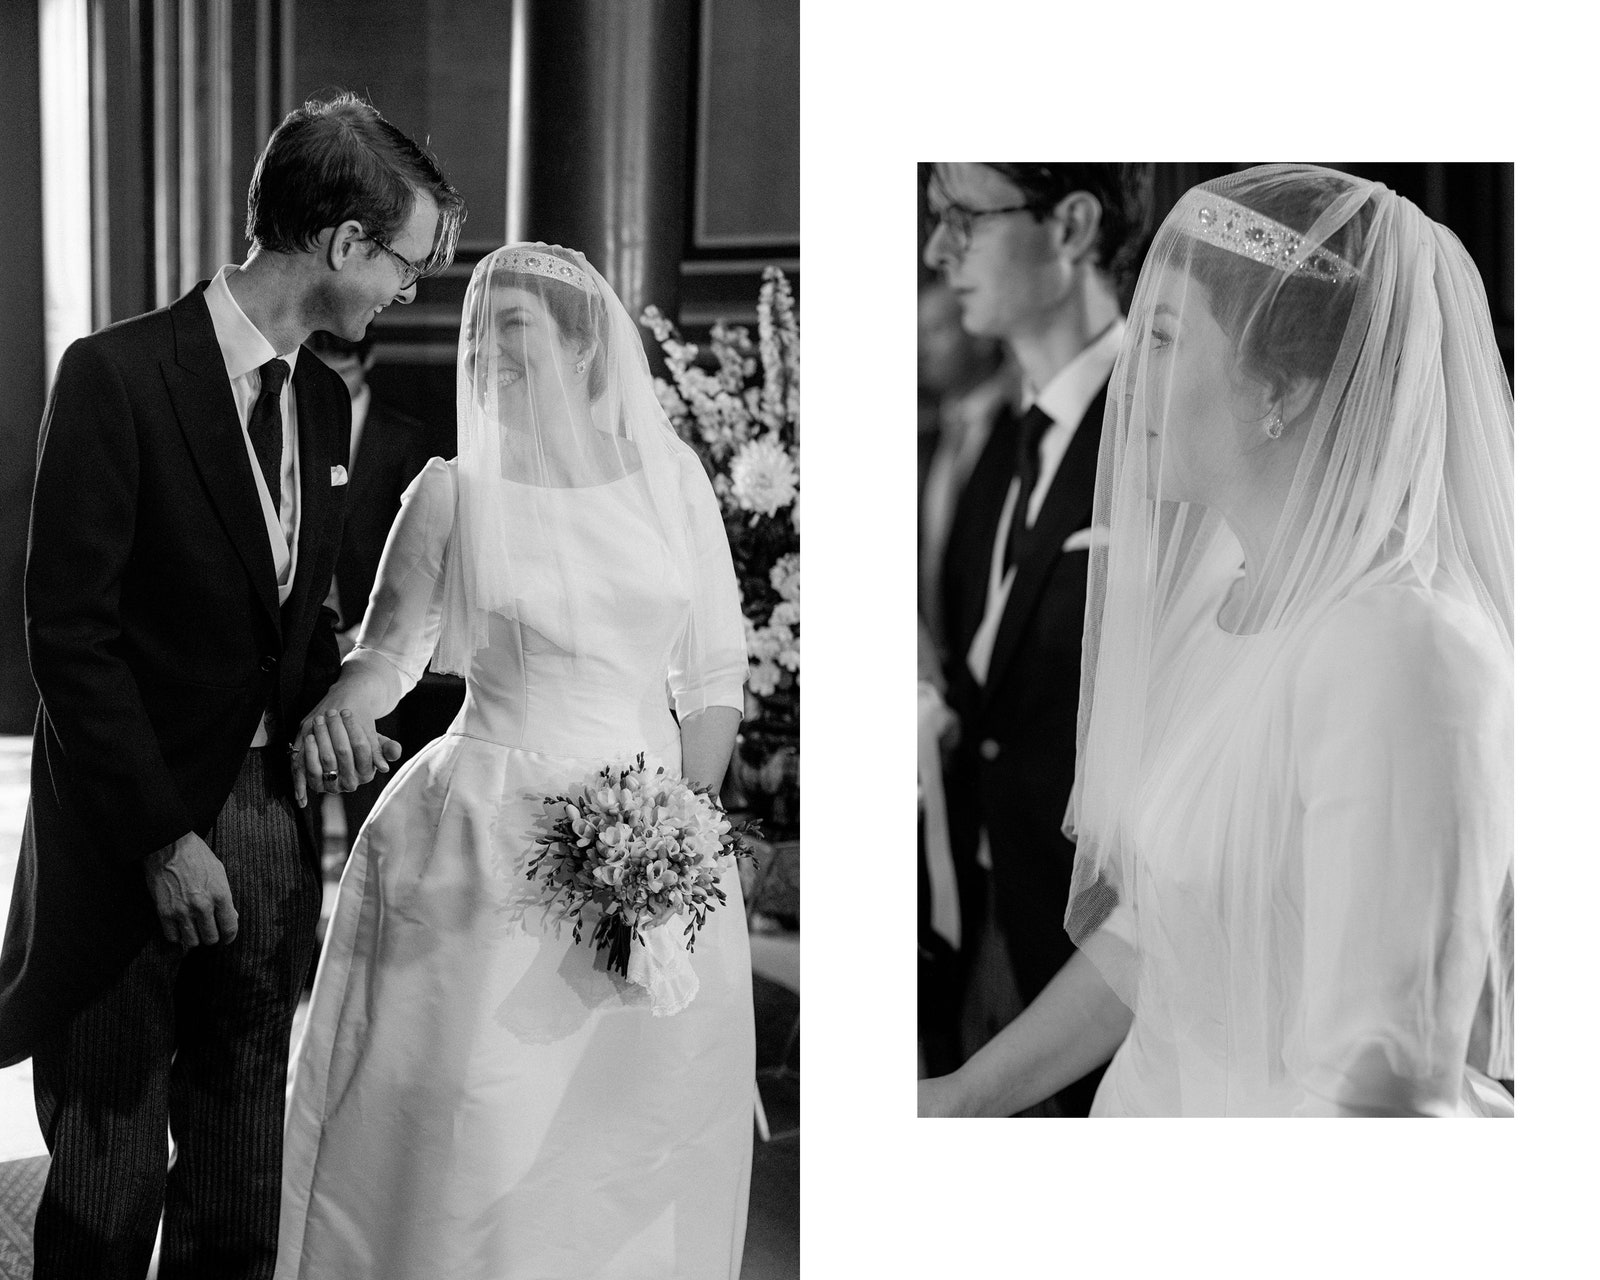 Посмотрите на фотографии со свадьбы потомка императорской династии князя Ростислава Романова